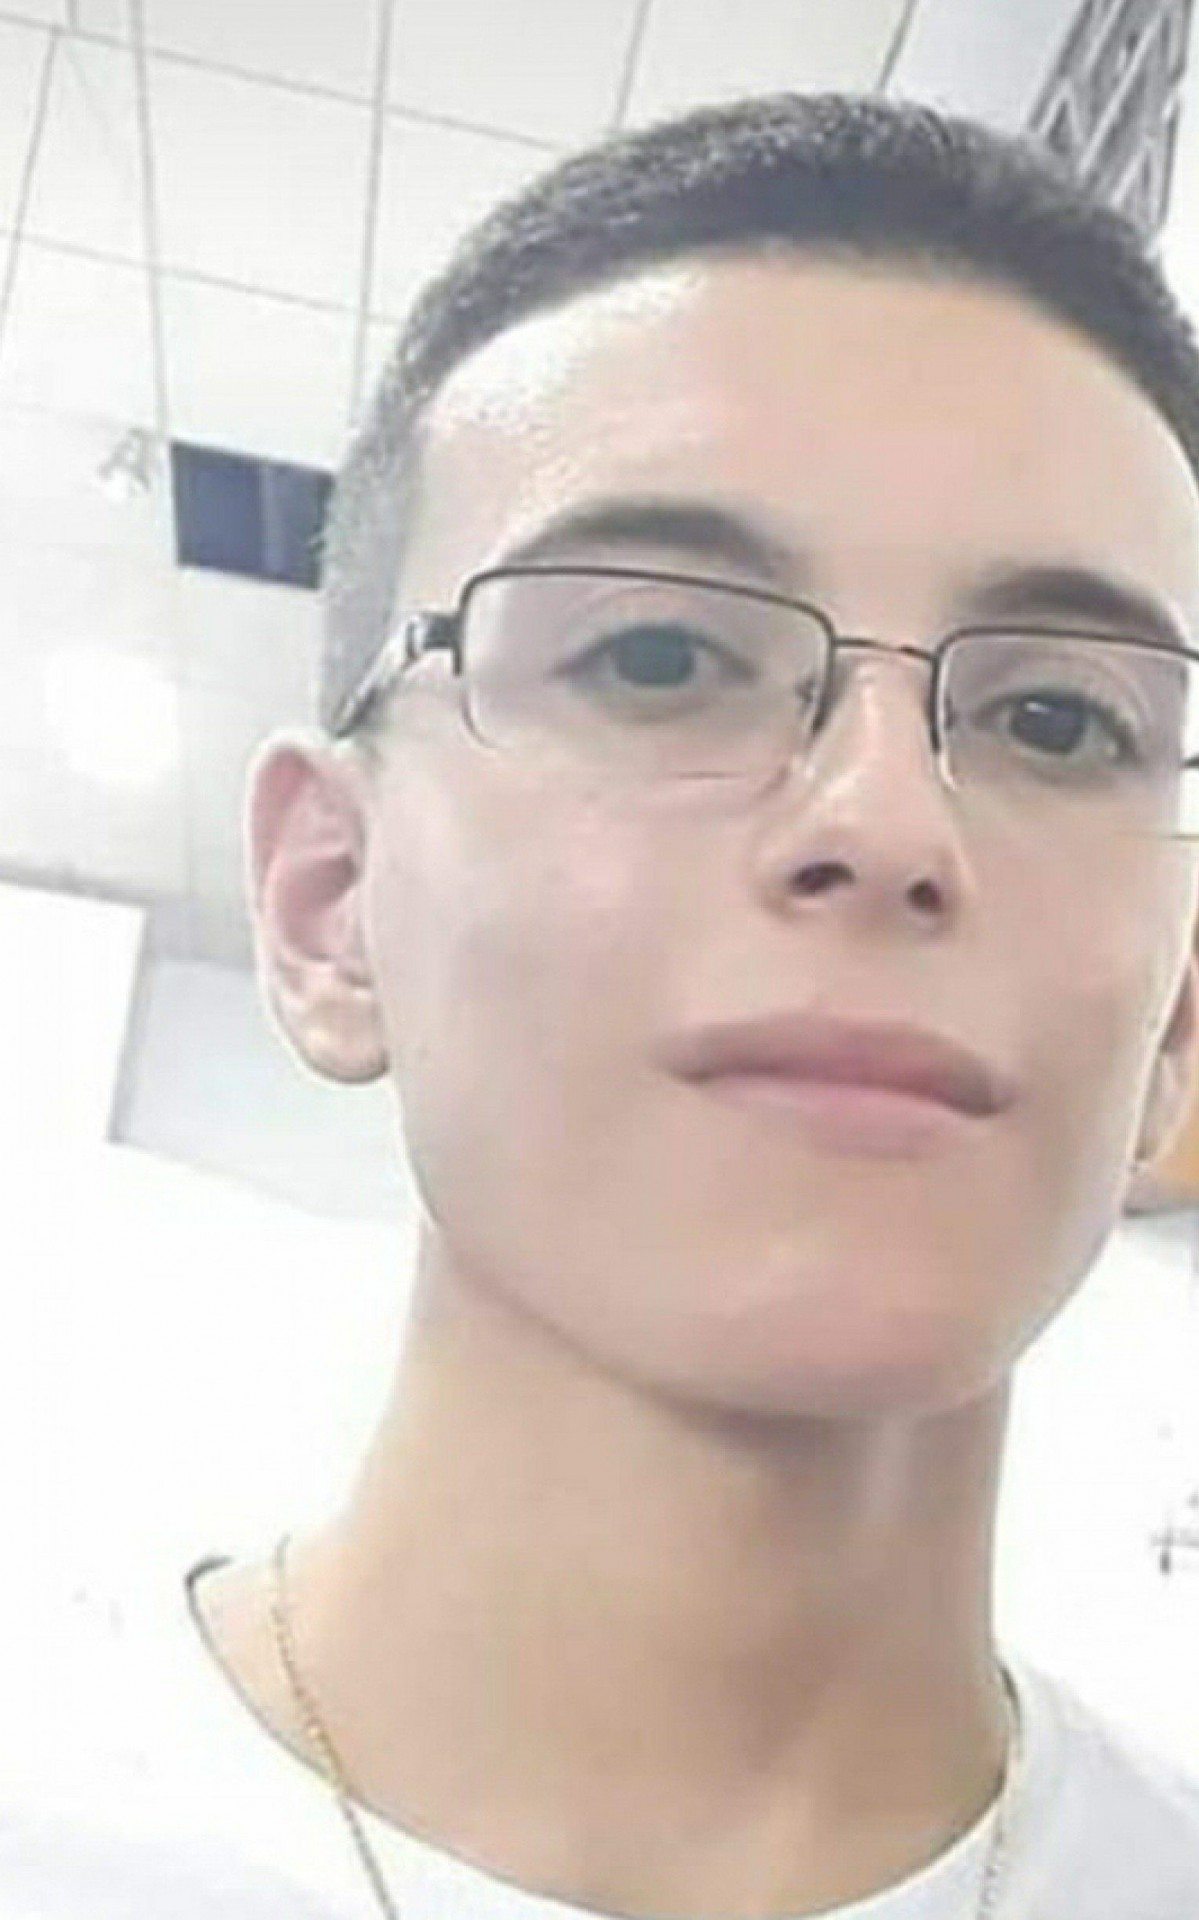 Diagnosticado com autismo, o estudante carioca Rodrigo de Lima Abreu, de 19 anos, que estava sumido há cerca de 24 horas, foi localizado, na manhã desta segunda-feira, no Centro da cidade de São Paulo, por policiais militares da região      - Arquivo Pessoal  